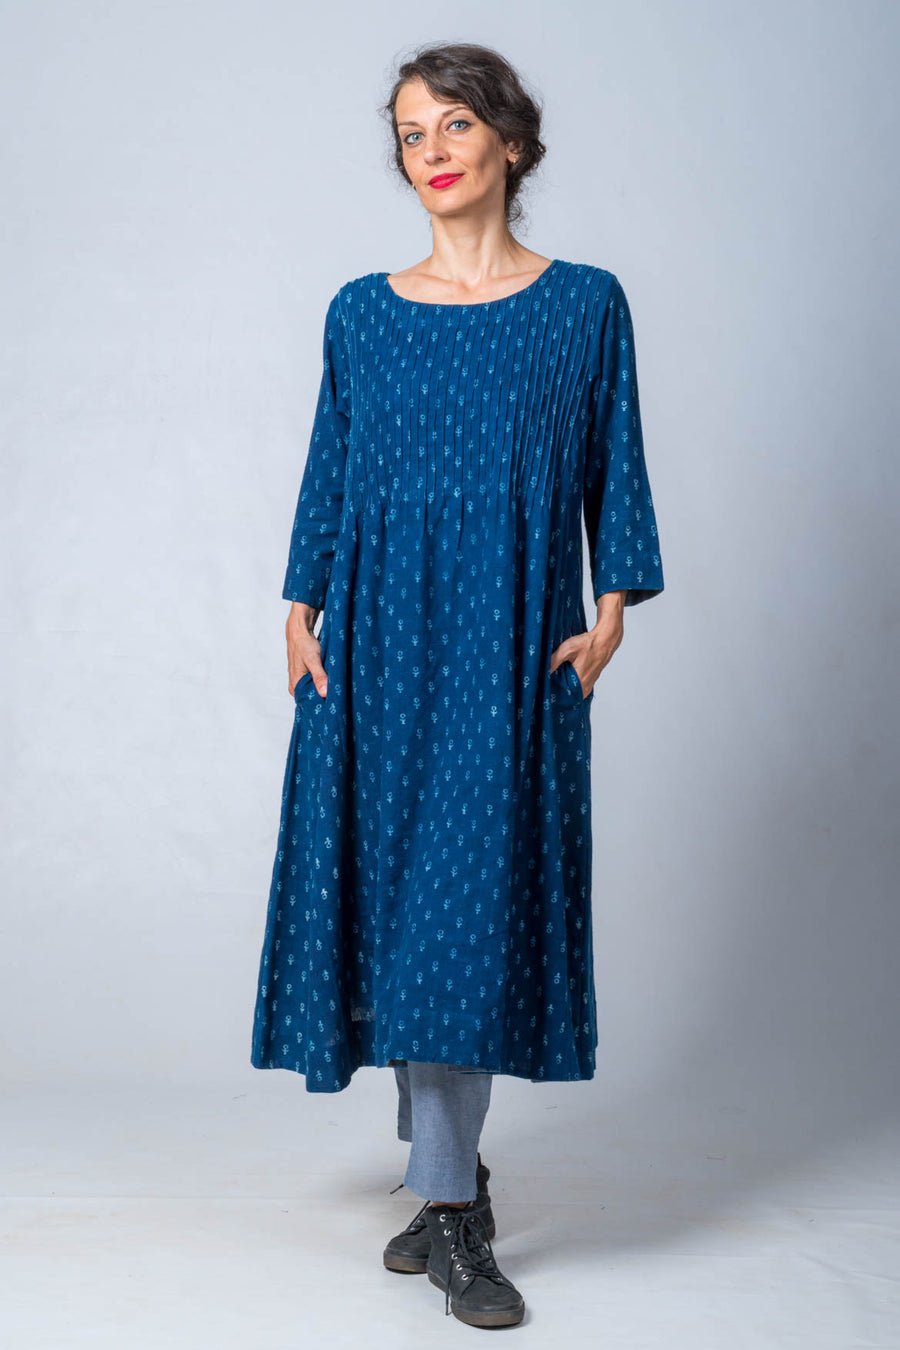 Pure Indigo Block printed Dress in Khadi- UDUPU